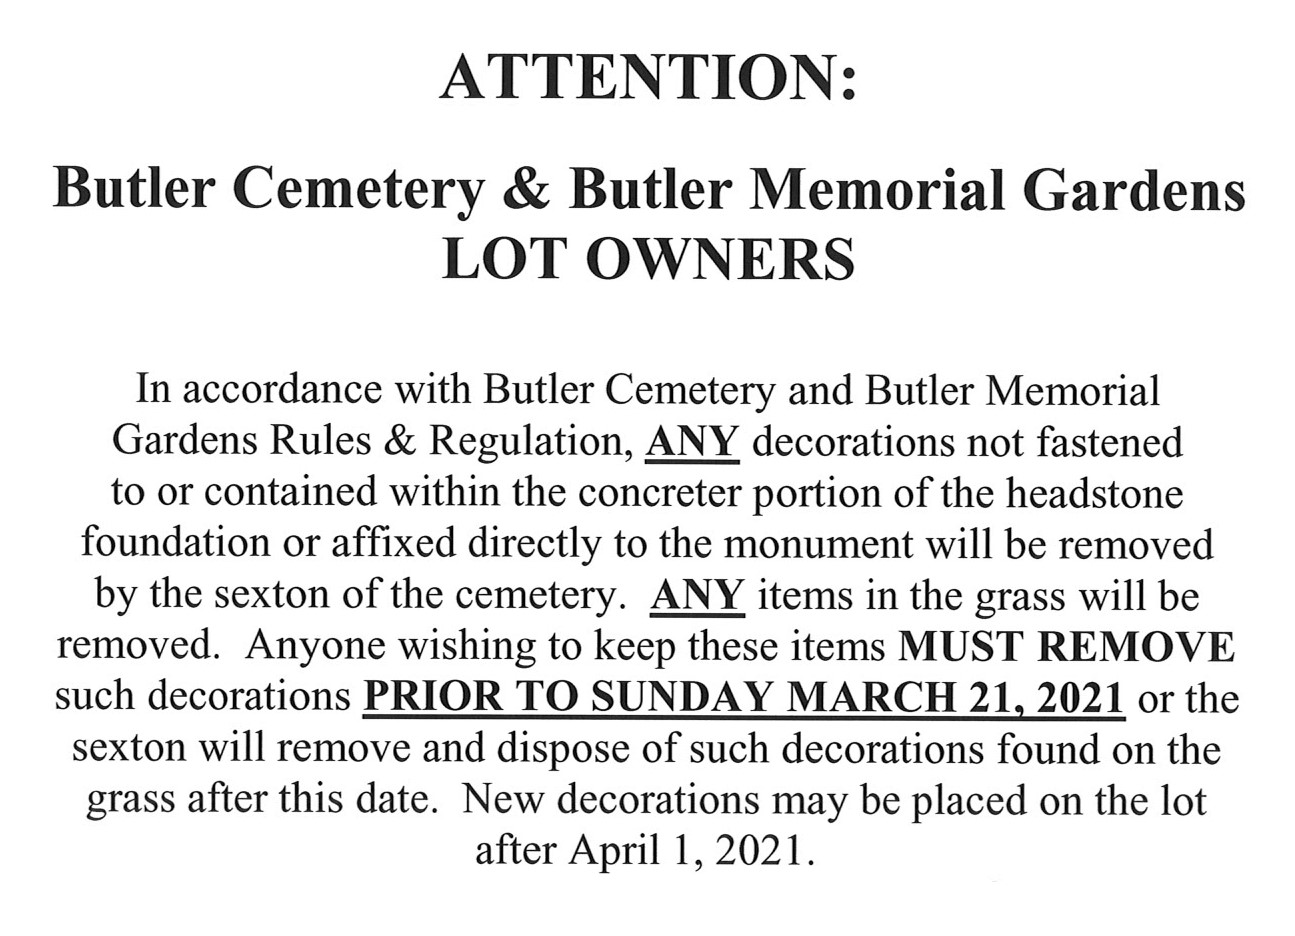 Cemetery notice - 3-3-2021